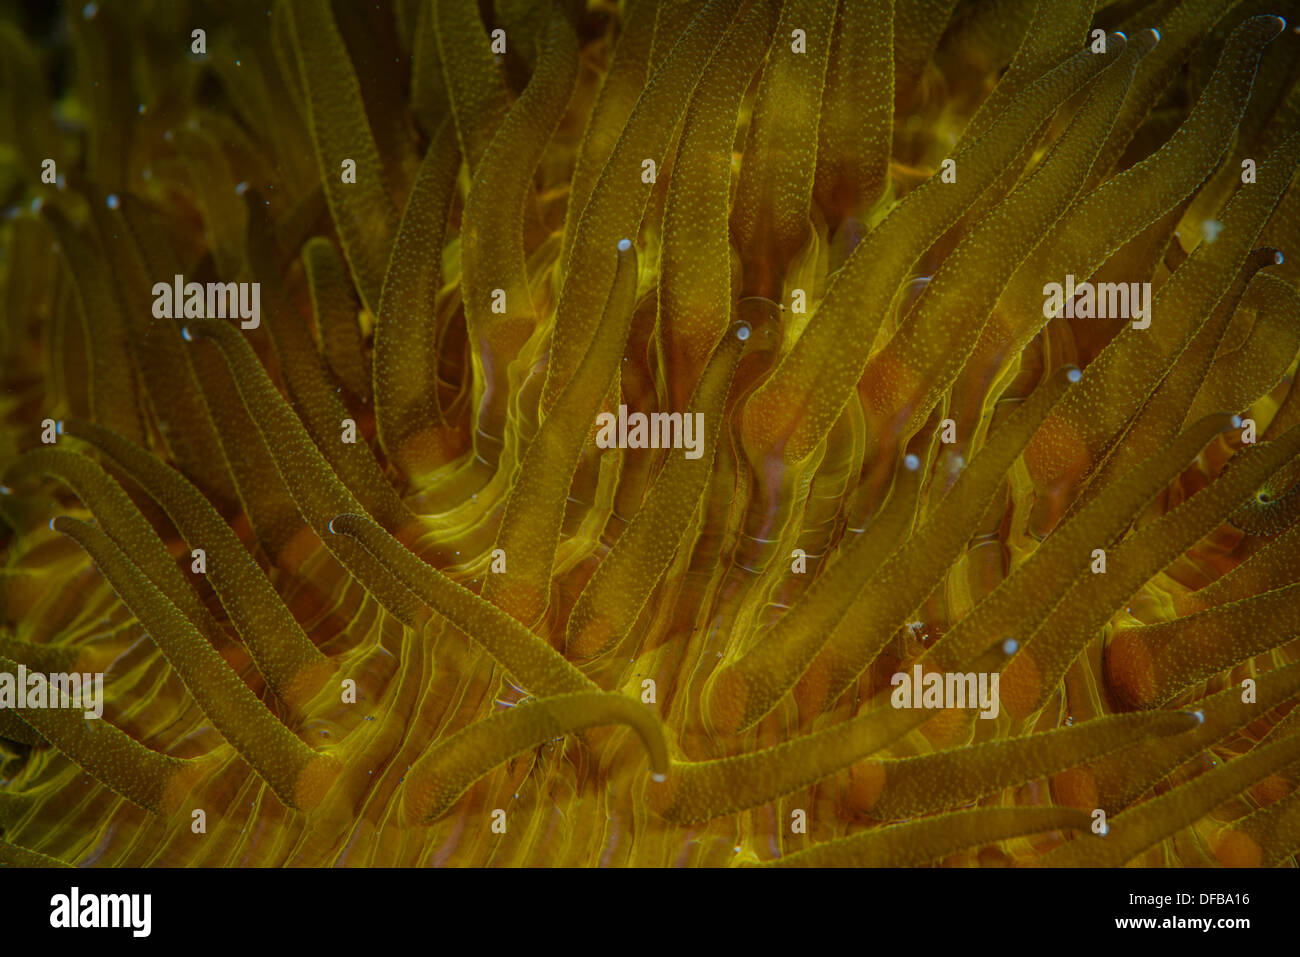 Immagine astratta utilizzando i tentacoli di un anemone Foto Stock